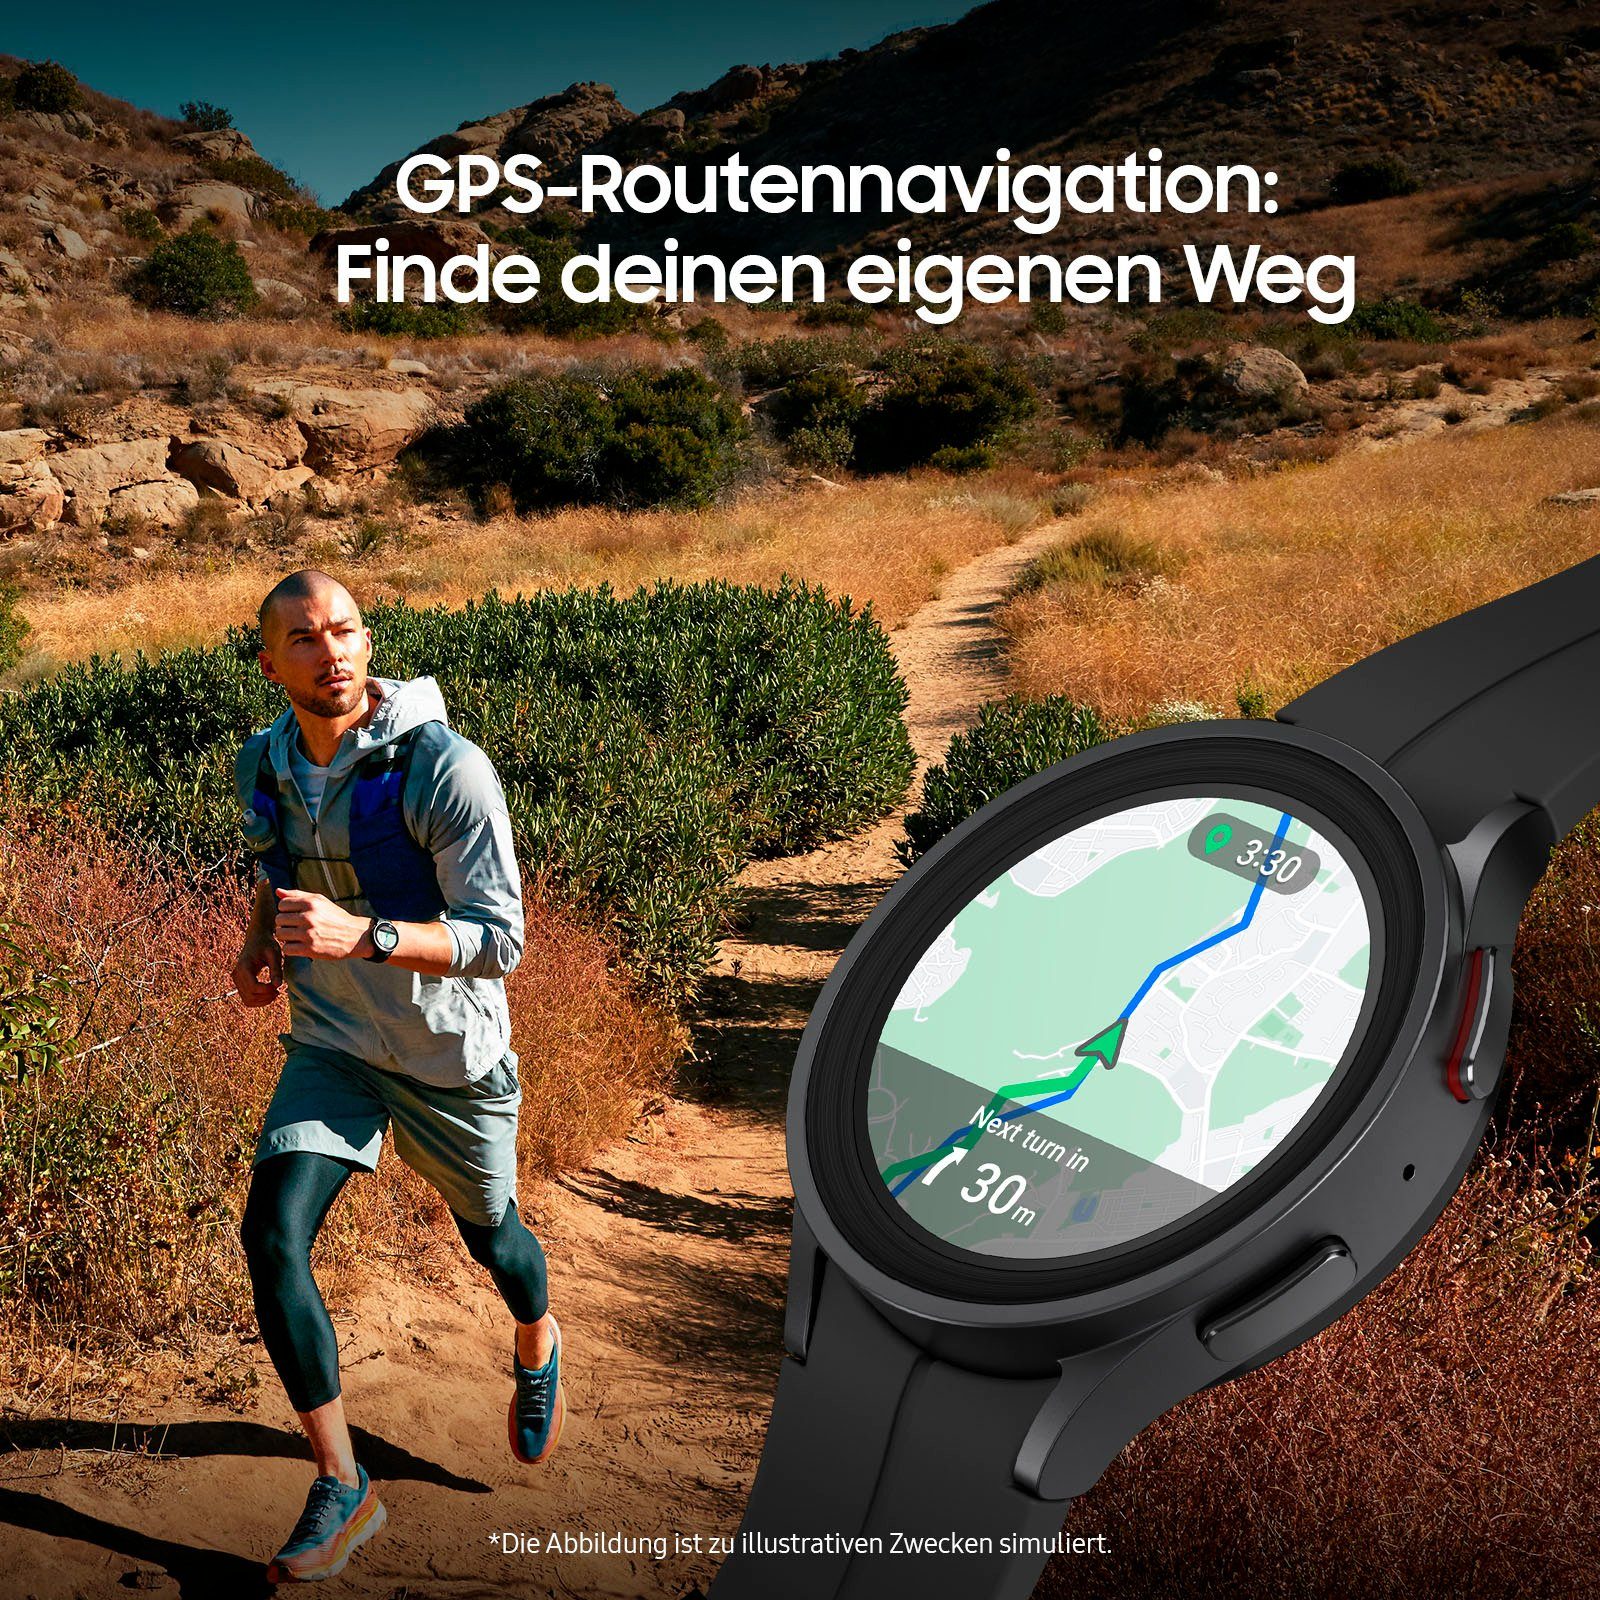 Samsung Galaxy Watch Smartwatch Pro Fitness LTE cm/1,4 OS schwarz 5 Uhr, Gesundheitsfunktionen Zoll, by Titanium (3,46 Fitness Tracker, Wear 45mm Black Samsung), 